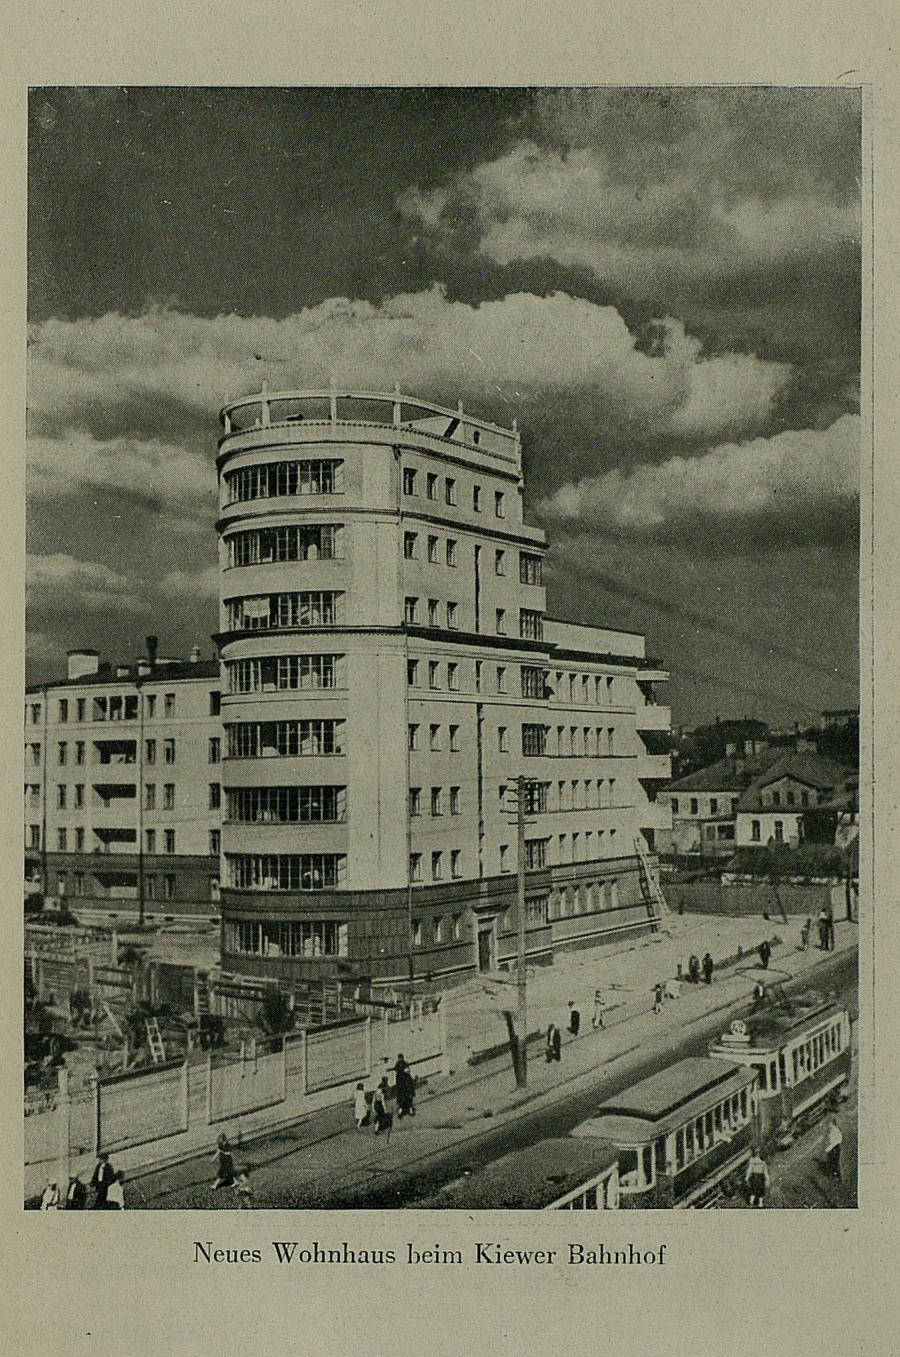 Moskau gestern, heute und morgen / L. Pertschik. — Moskau : Verlagsgenossenschaft ausländischer Arbeiter in der UdSSR, 1936